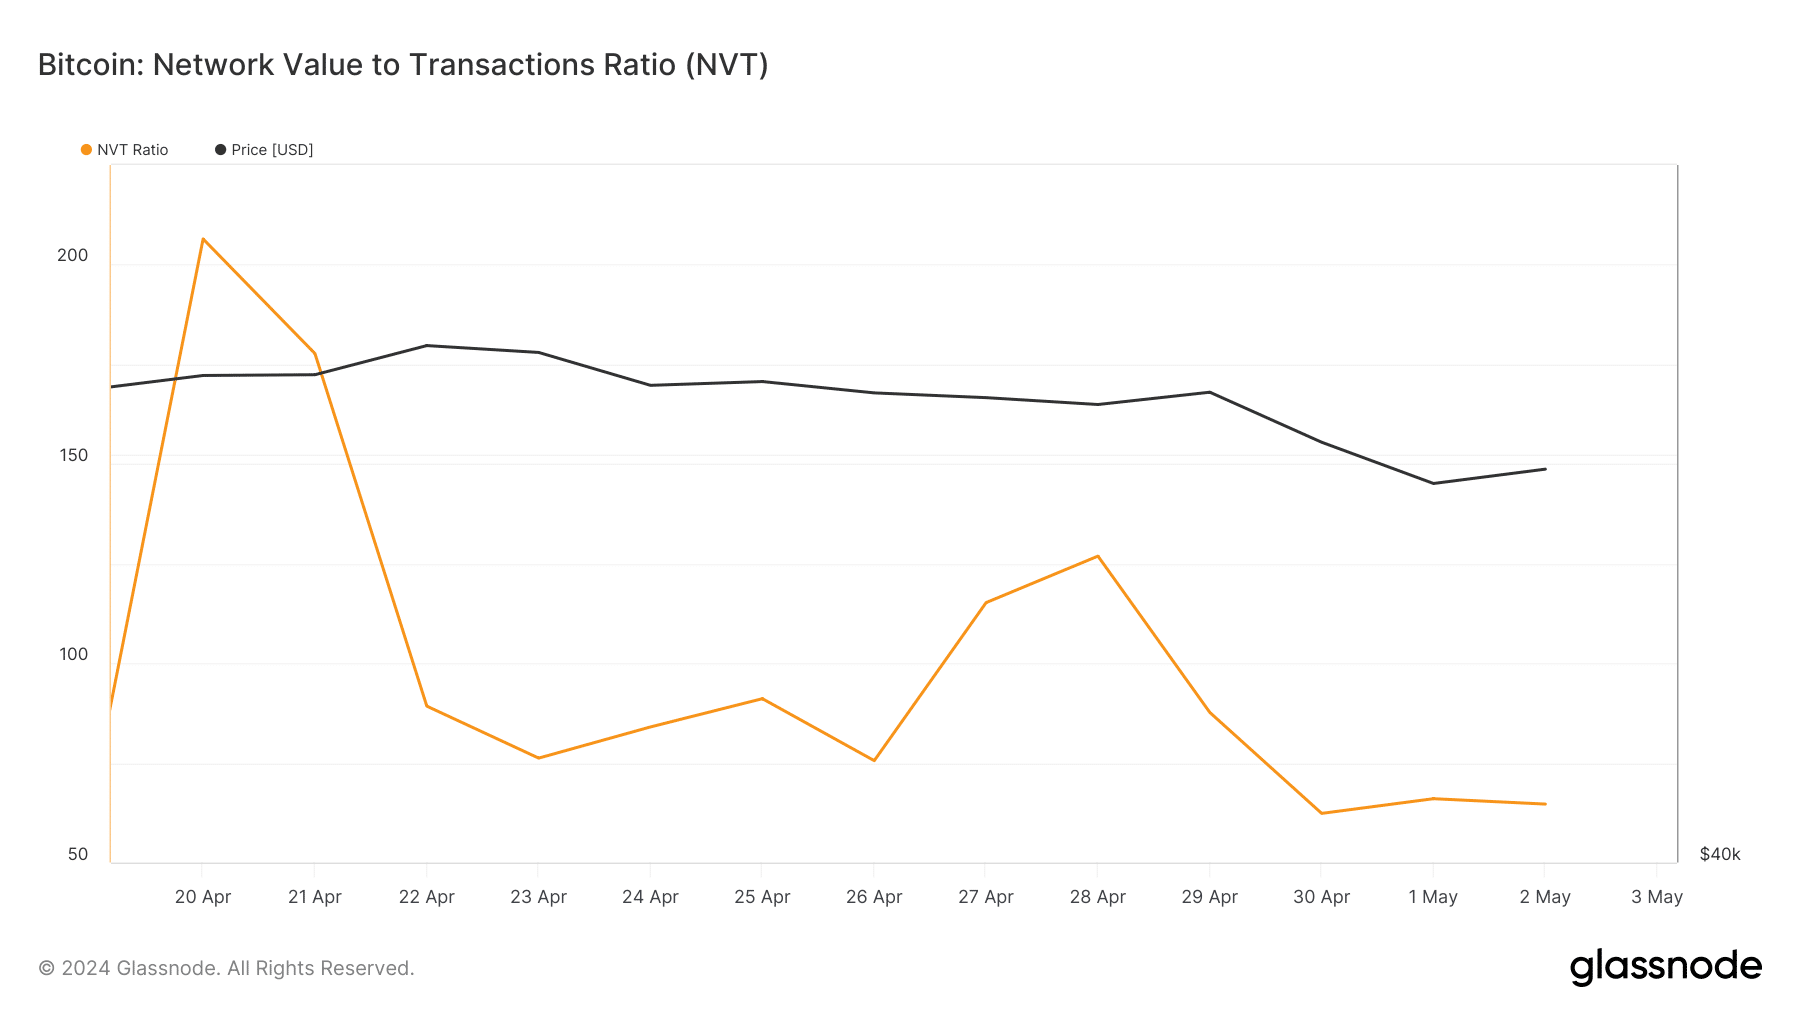 Bitcoin's NVT ratio dropped